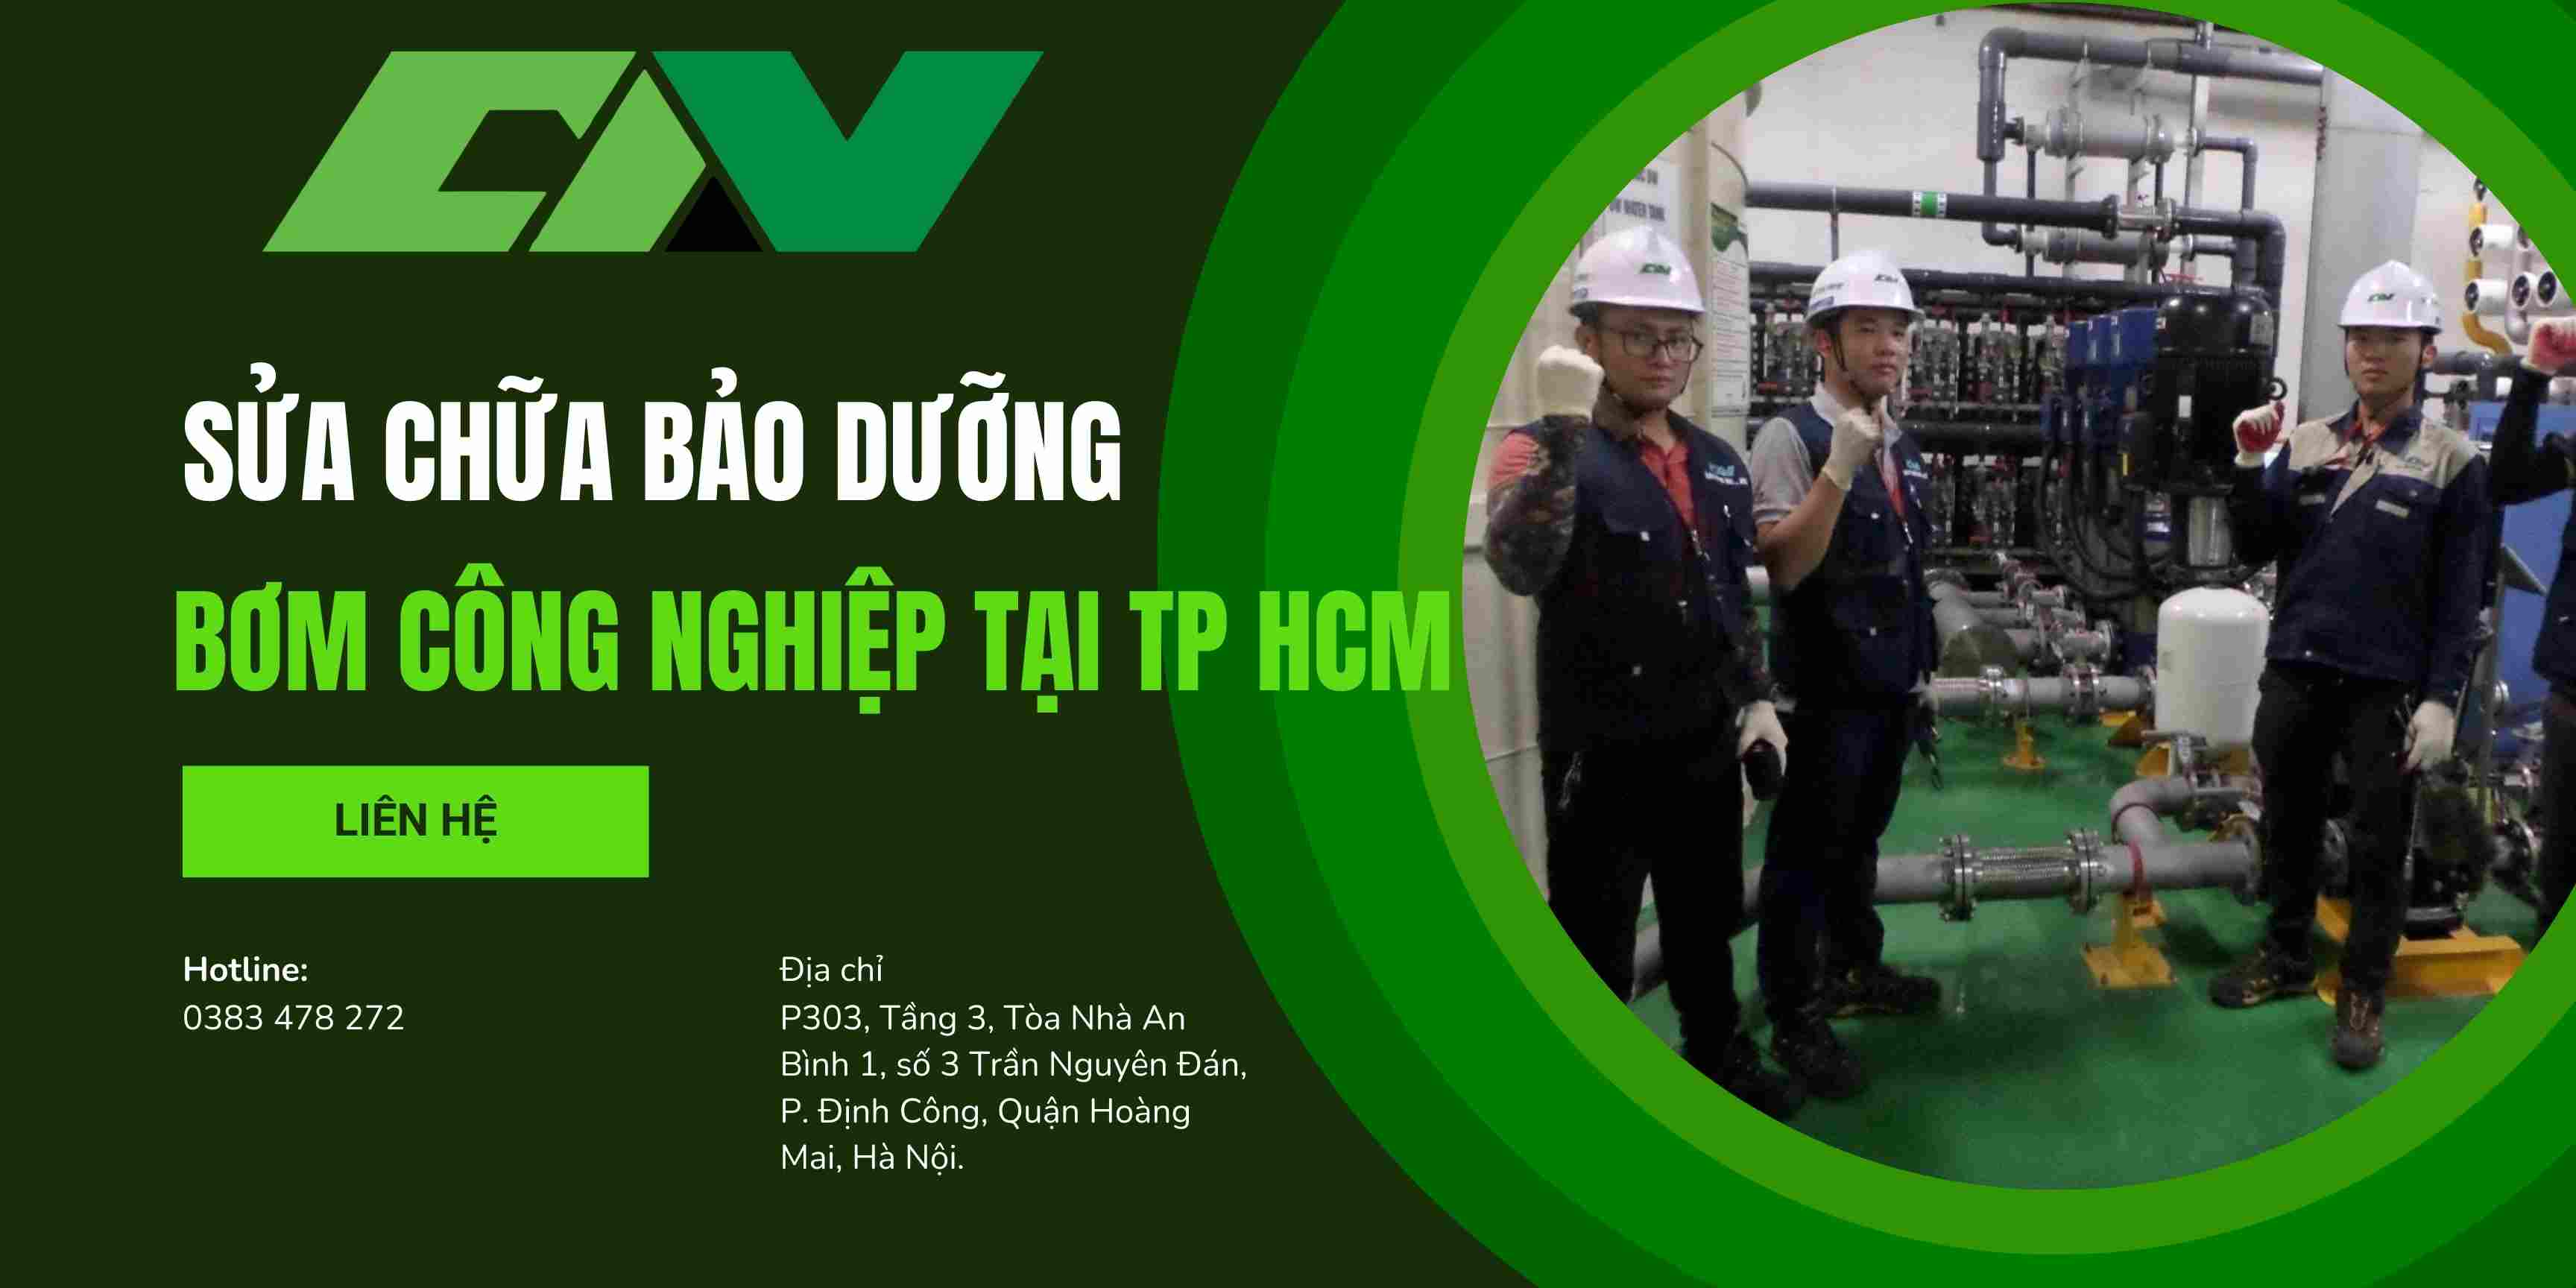 Sửa chữa bảo dưỡng máy bơm công nghiệp tại Hồ Chí Minh